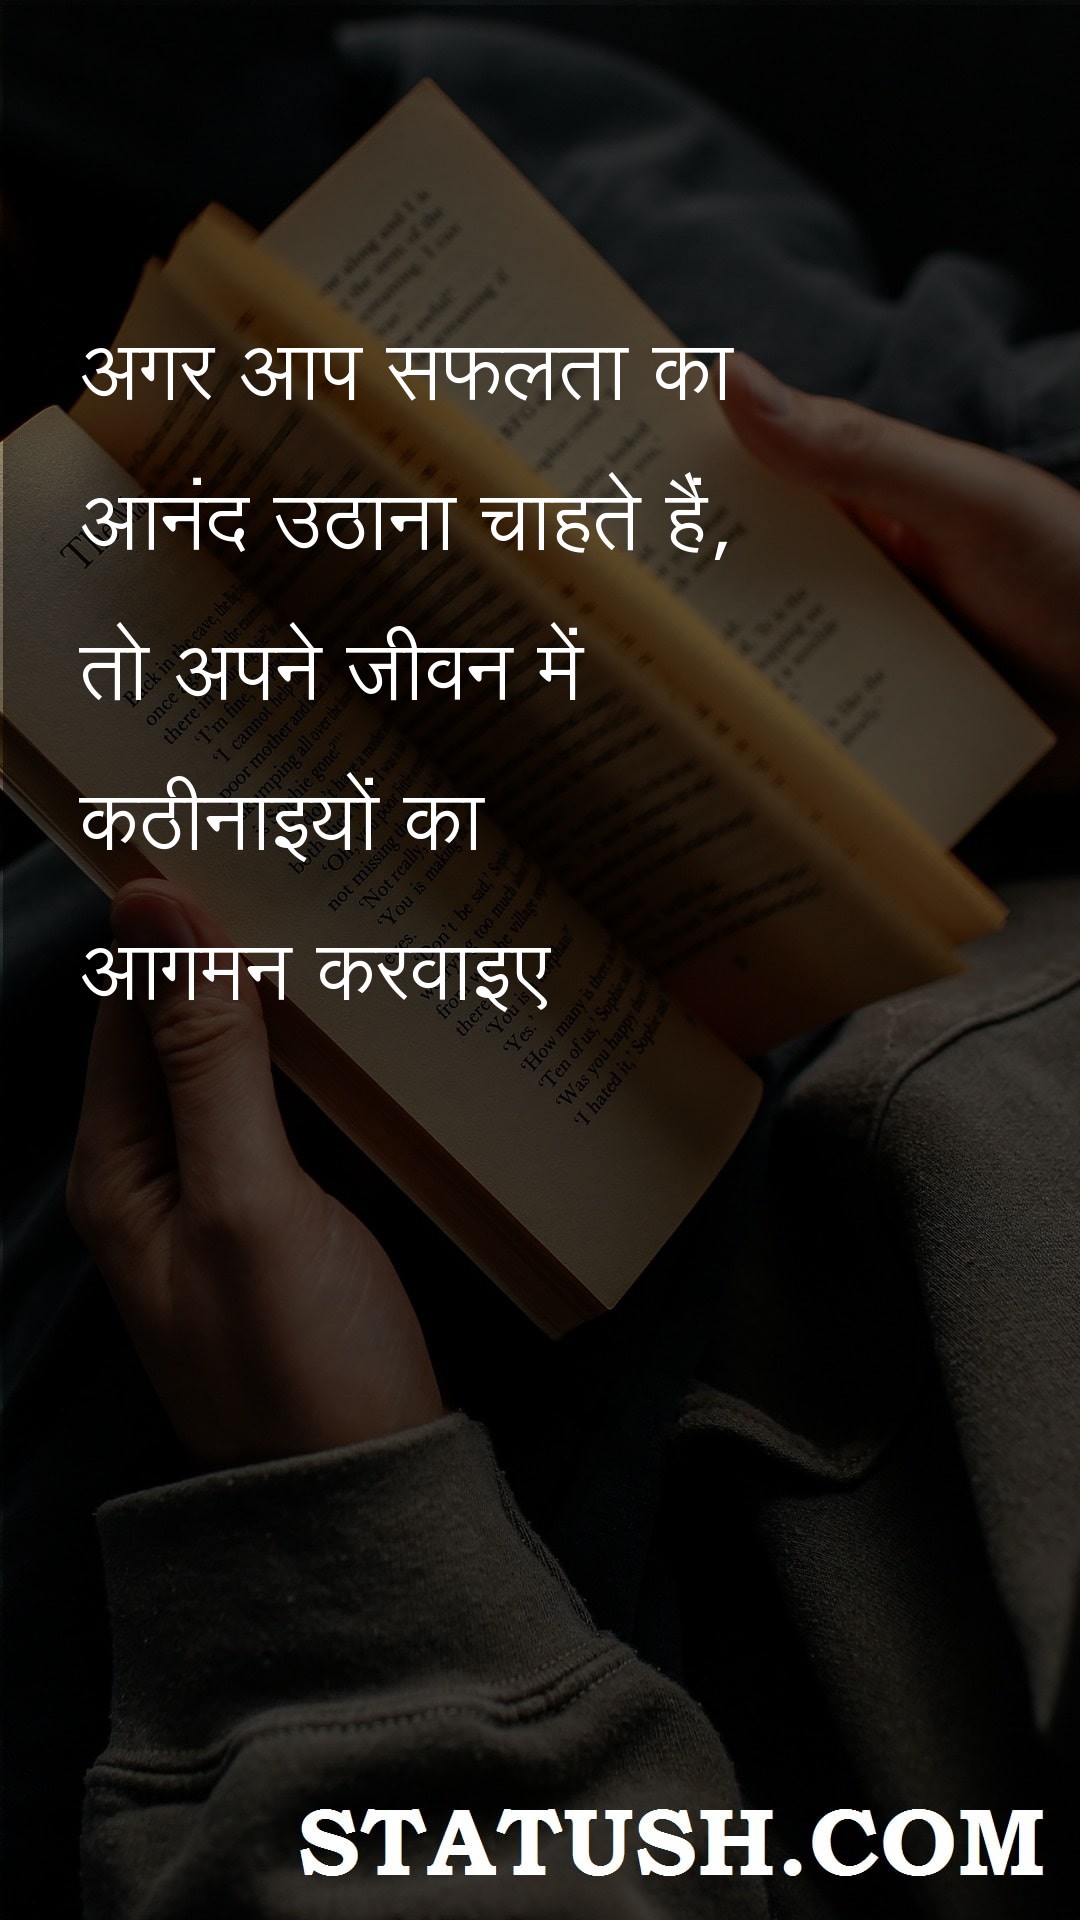 If you want to enjoy success - Hindi Quotes at statush.com